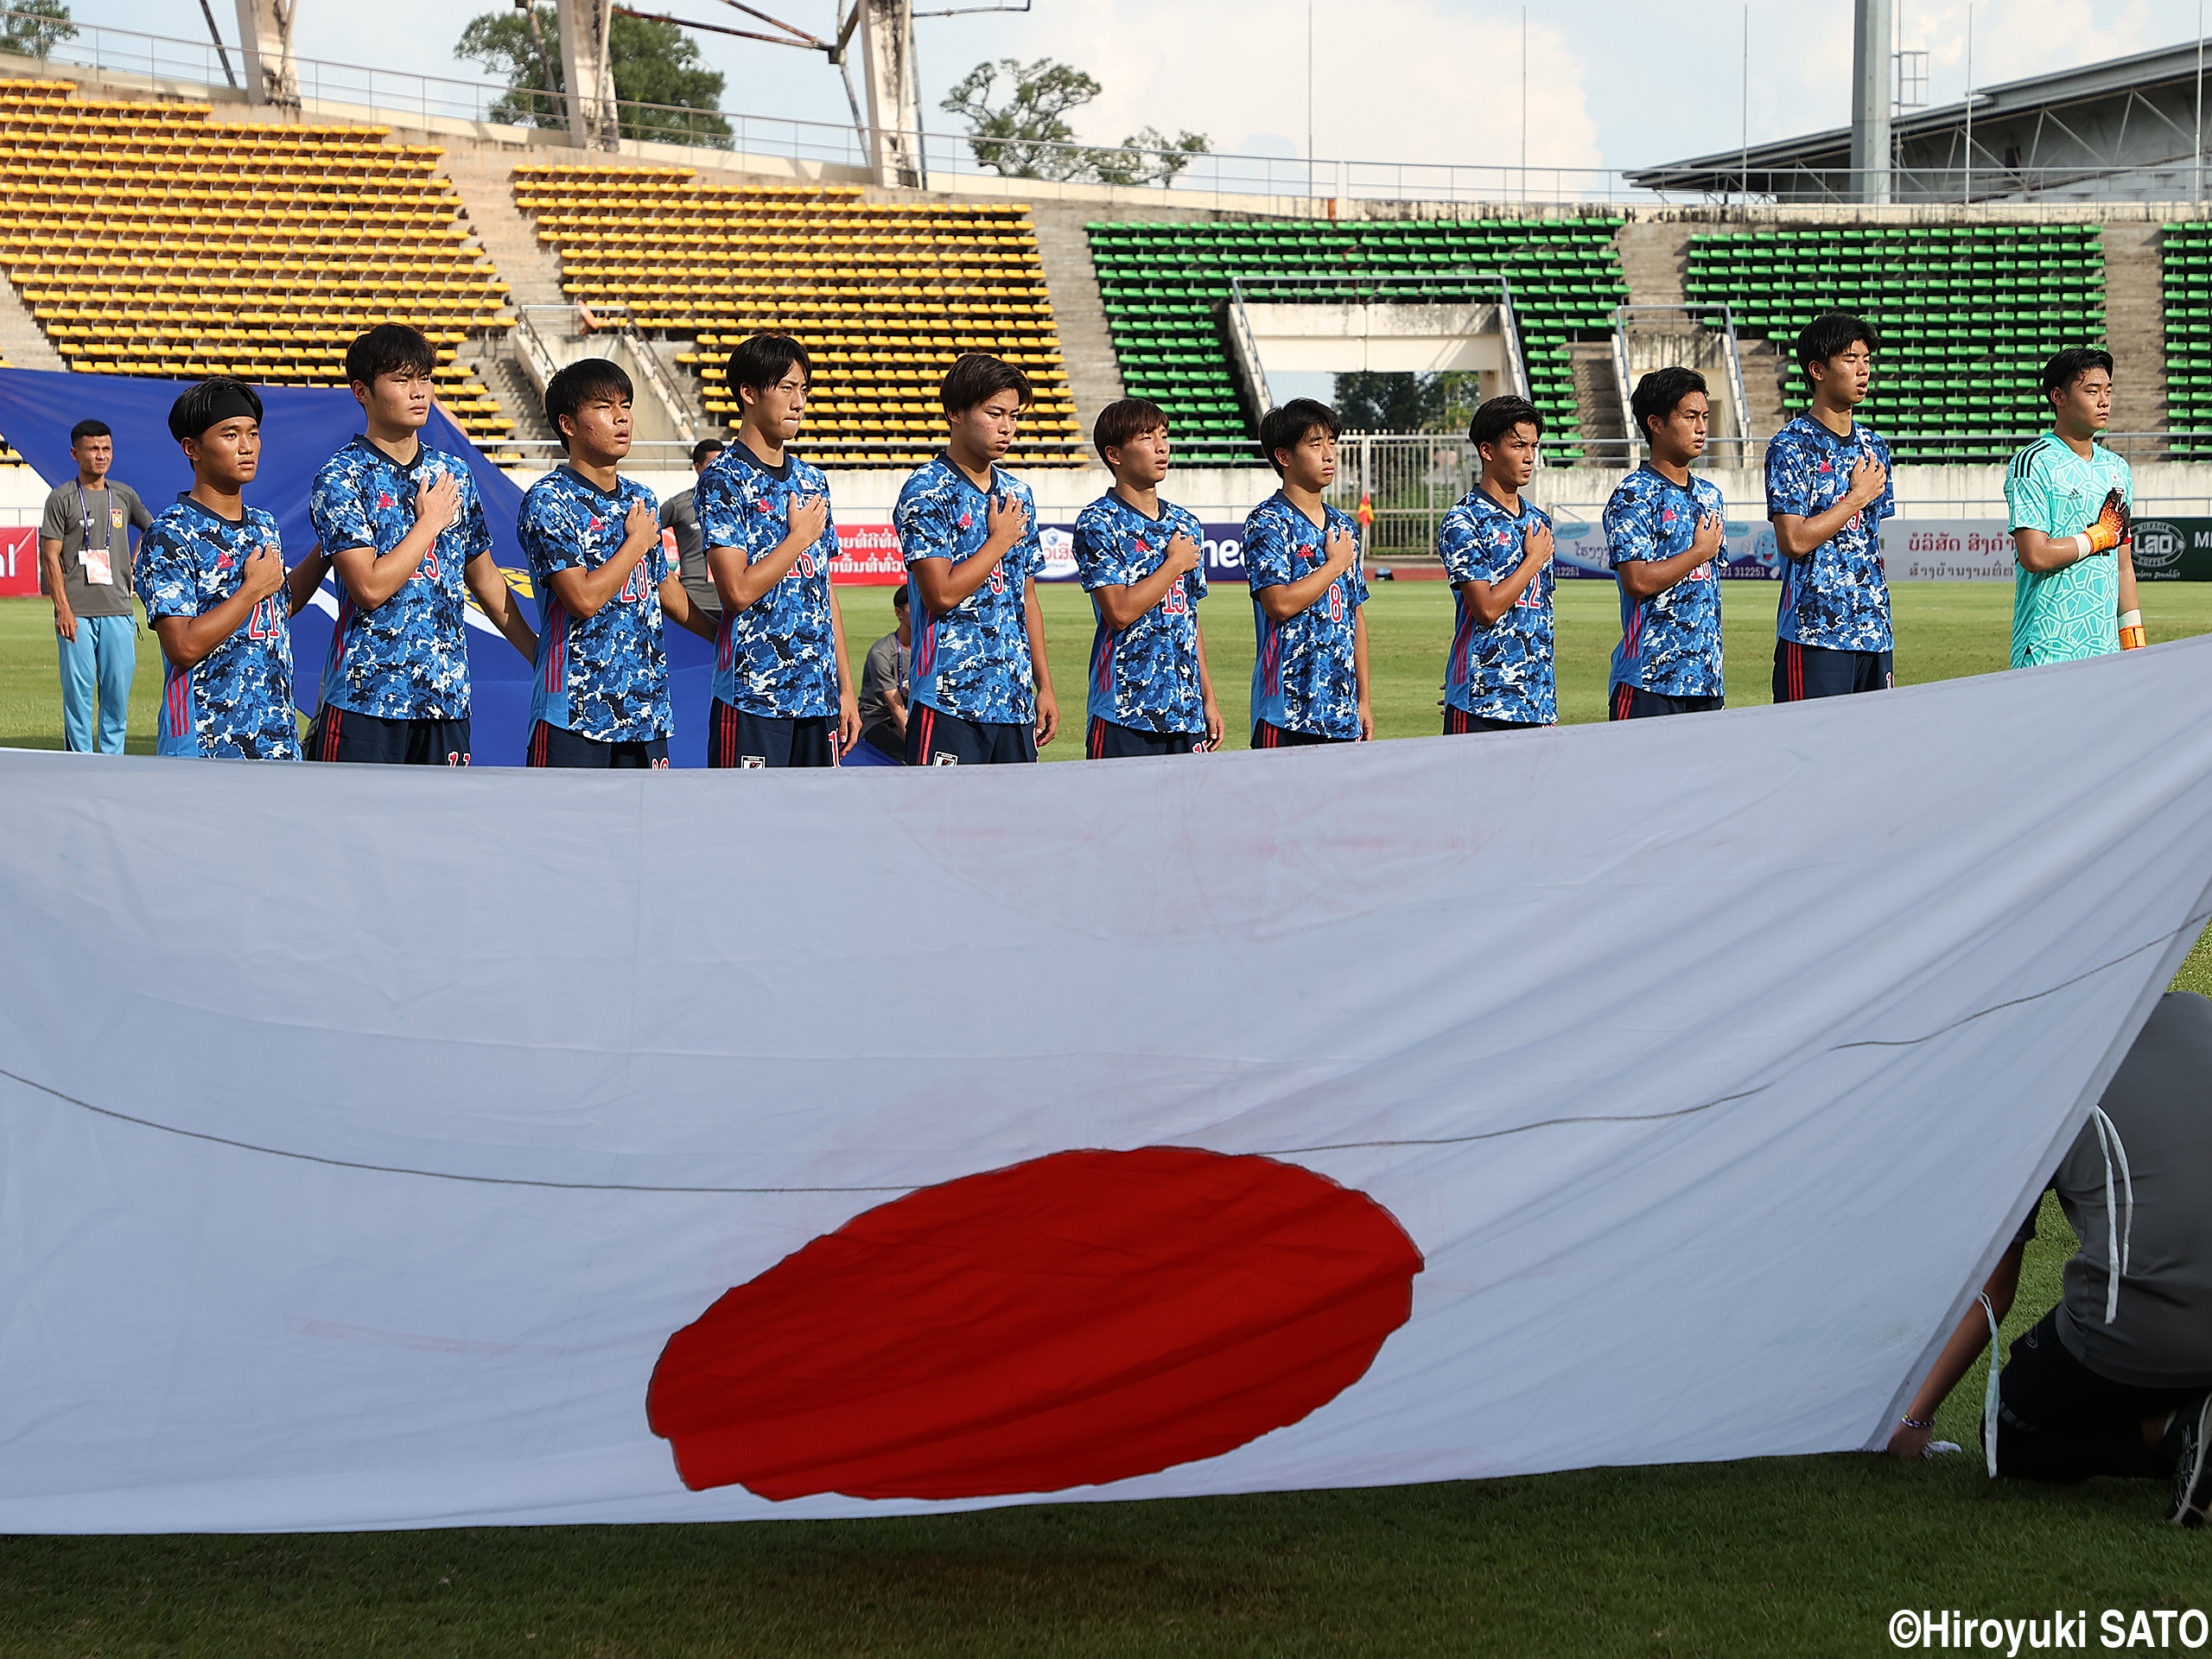 先発11人入れ替えのU-19日本代表がグアムに大勝、2戦2勝に(17枚)